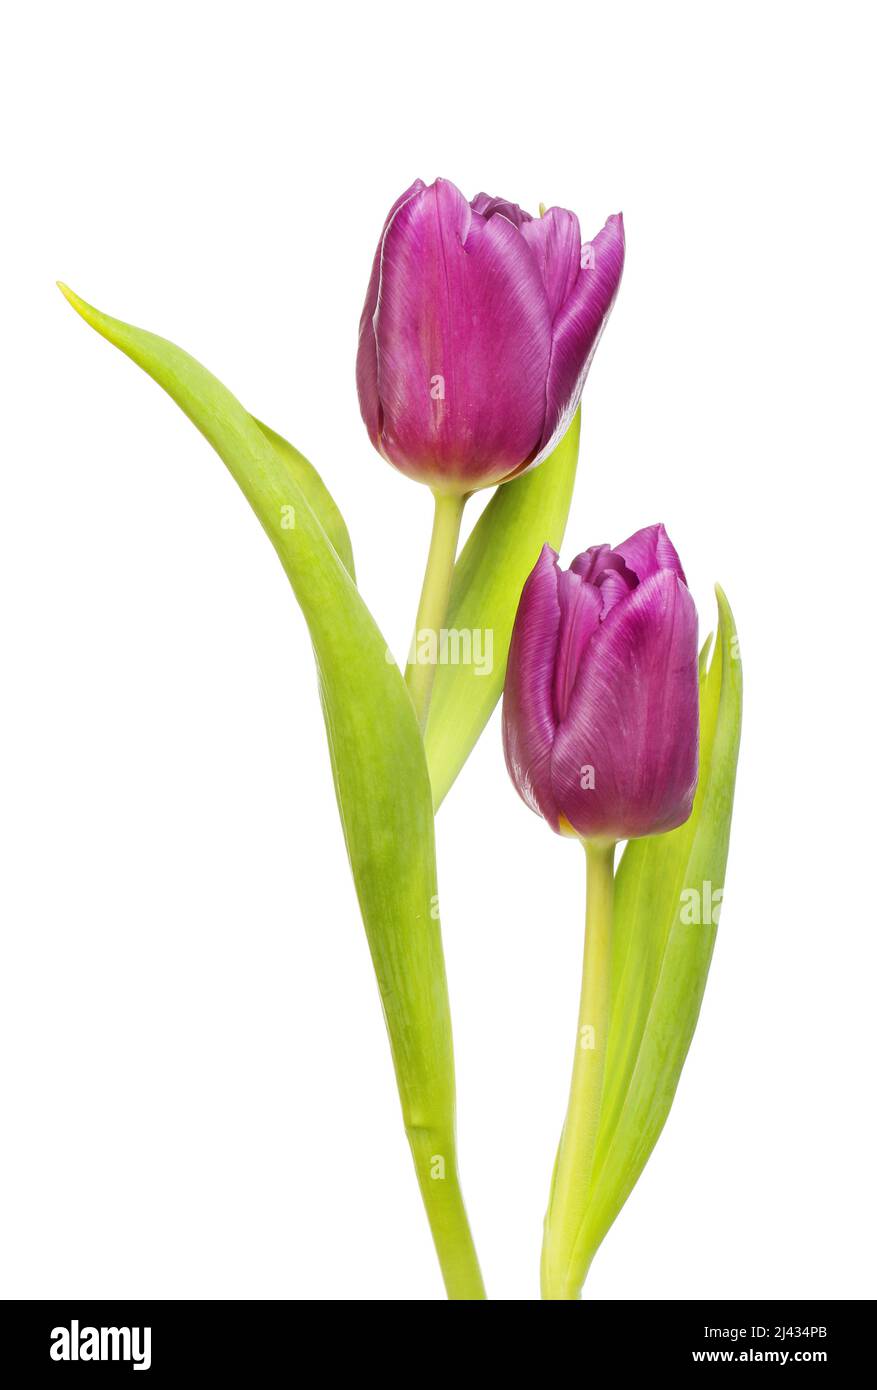 Dos flores de tulipán púrpura y follaje aislado contra el blanco Foto de stock